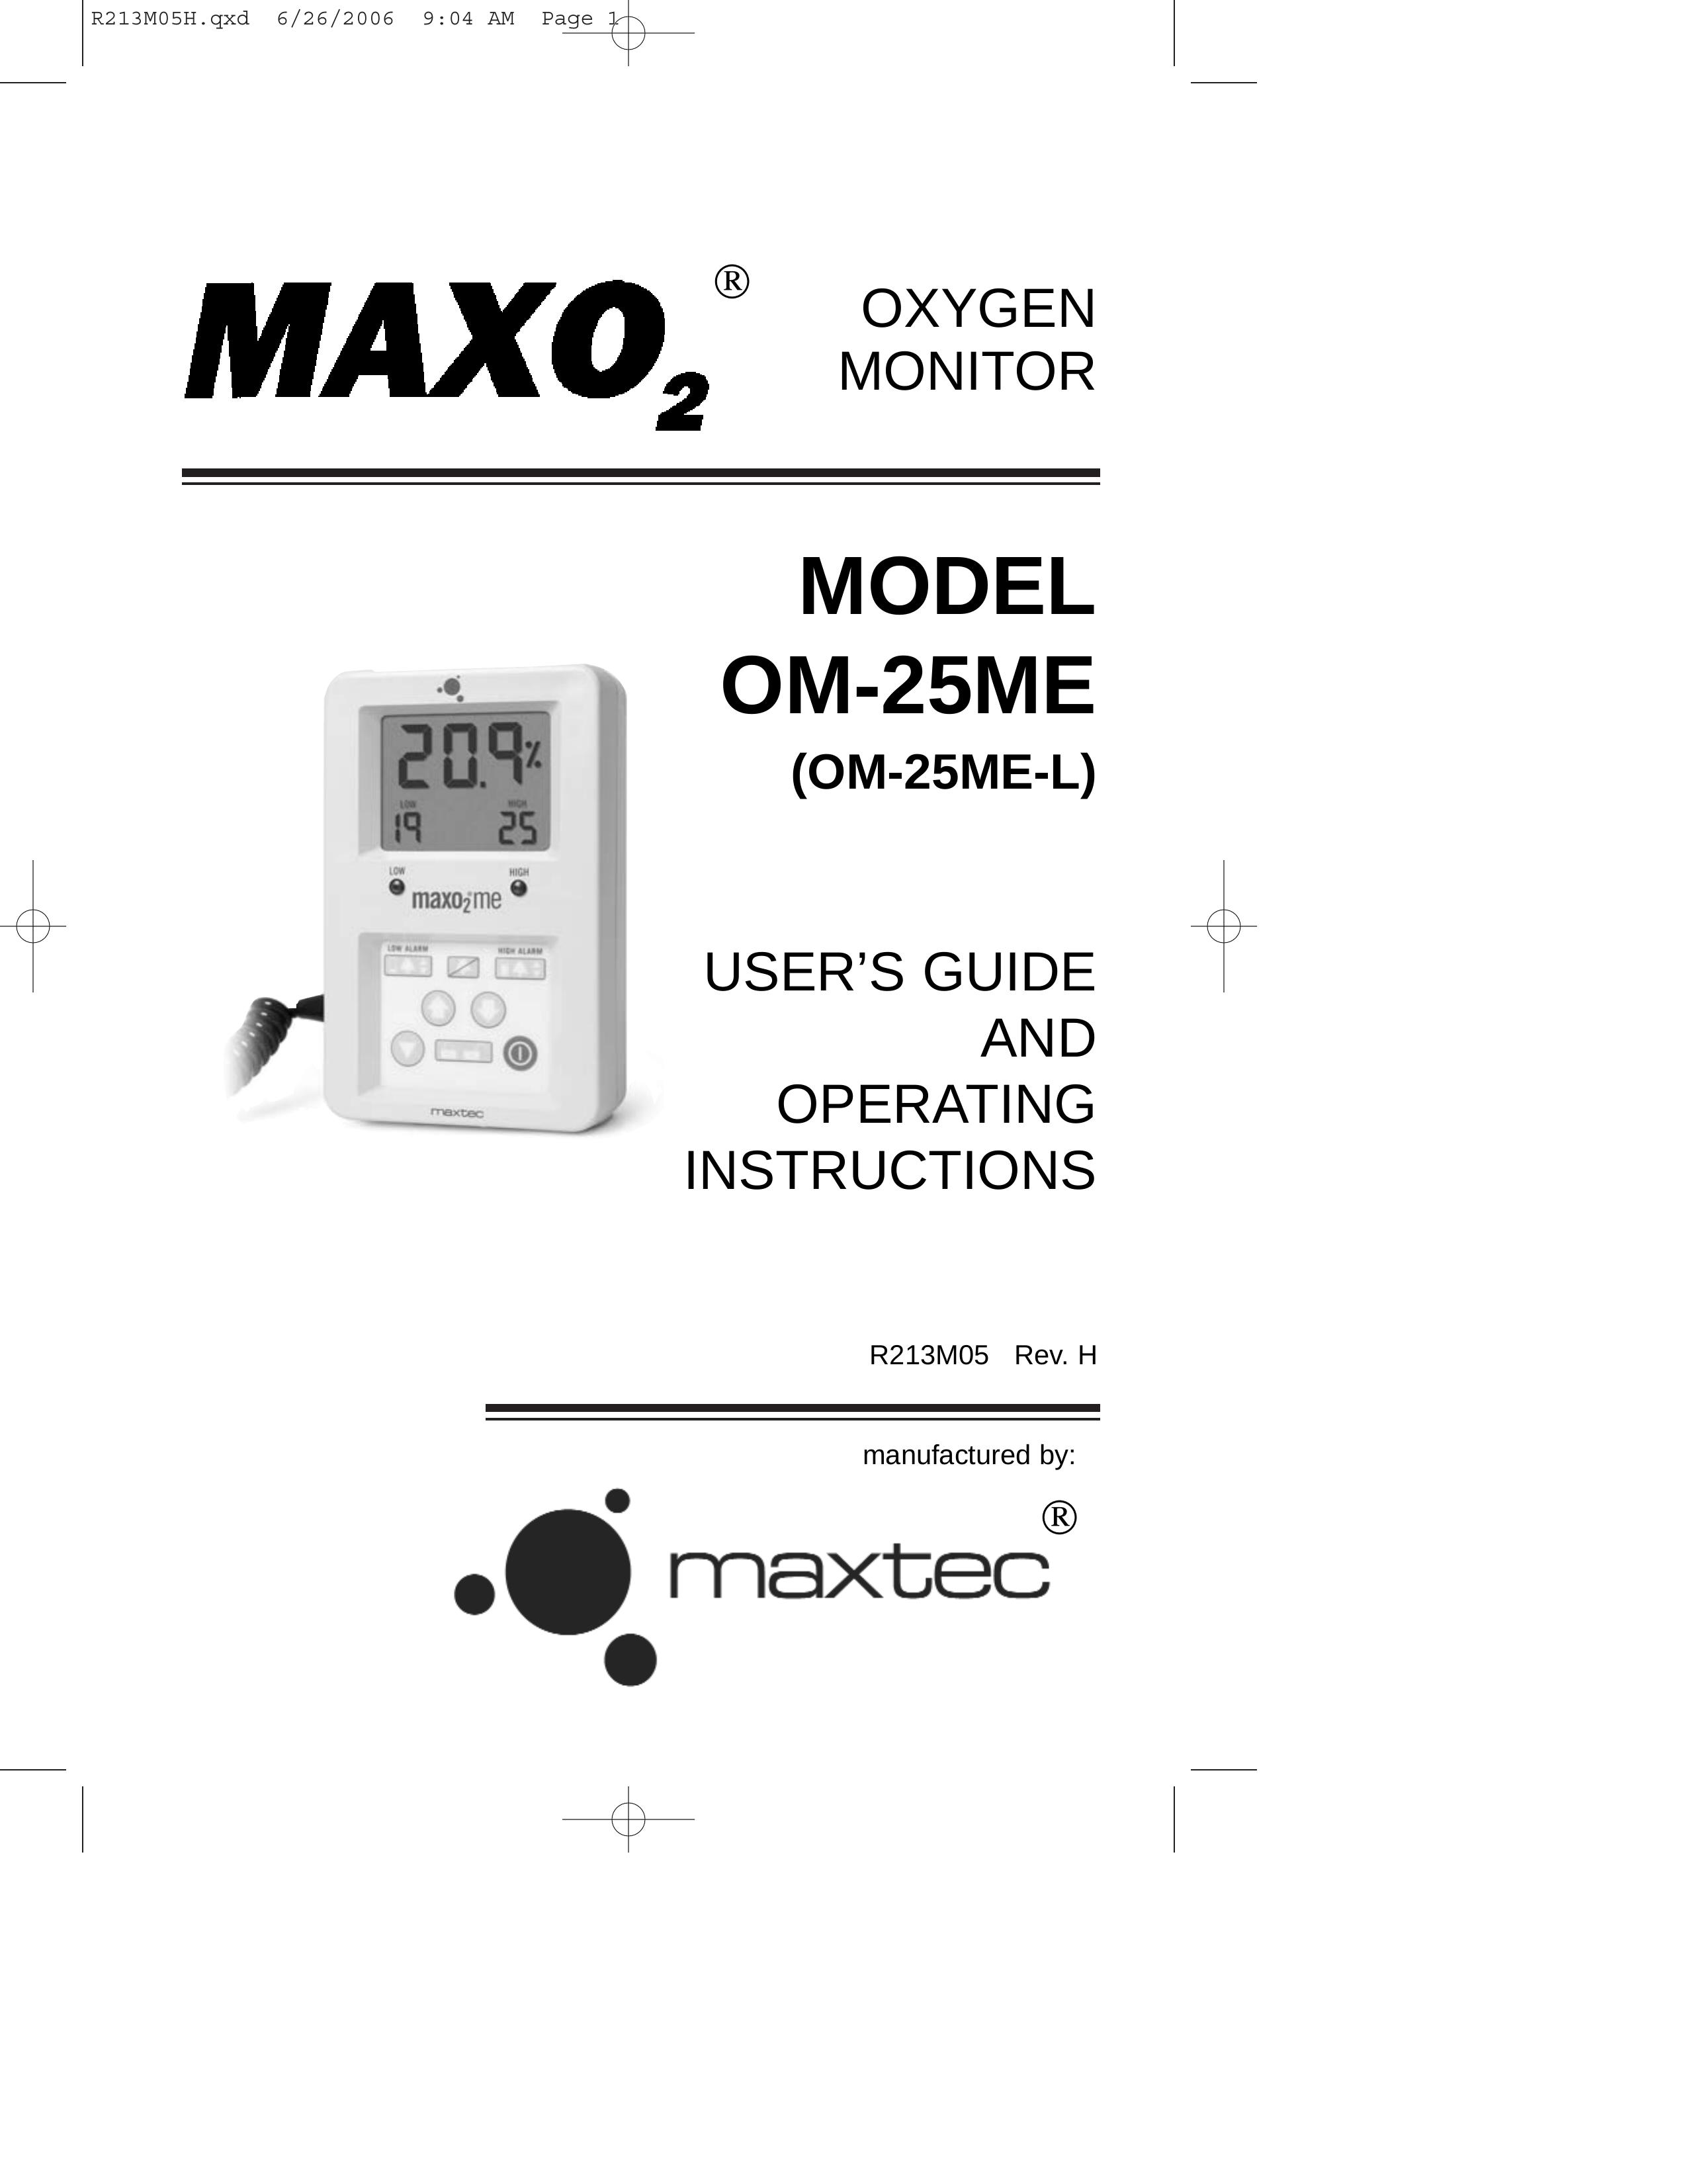 MaxTech OM-25ME Oxygen Equipment User Manual